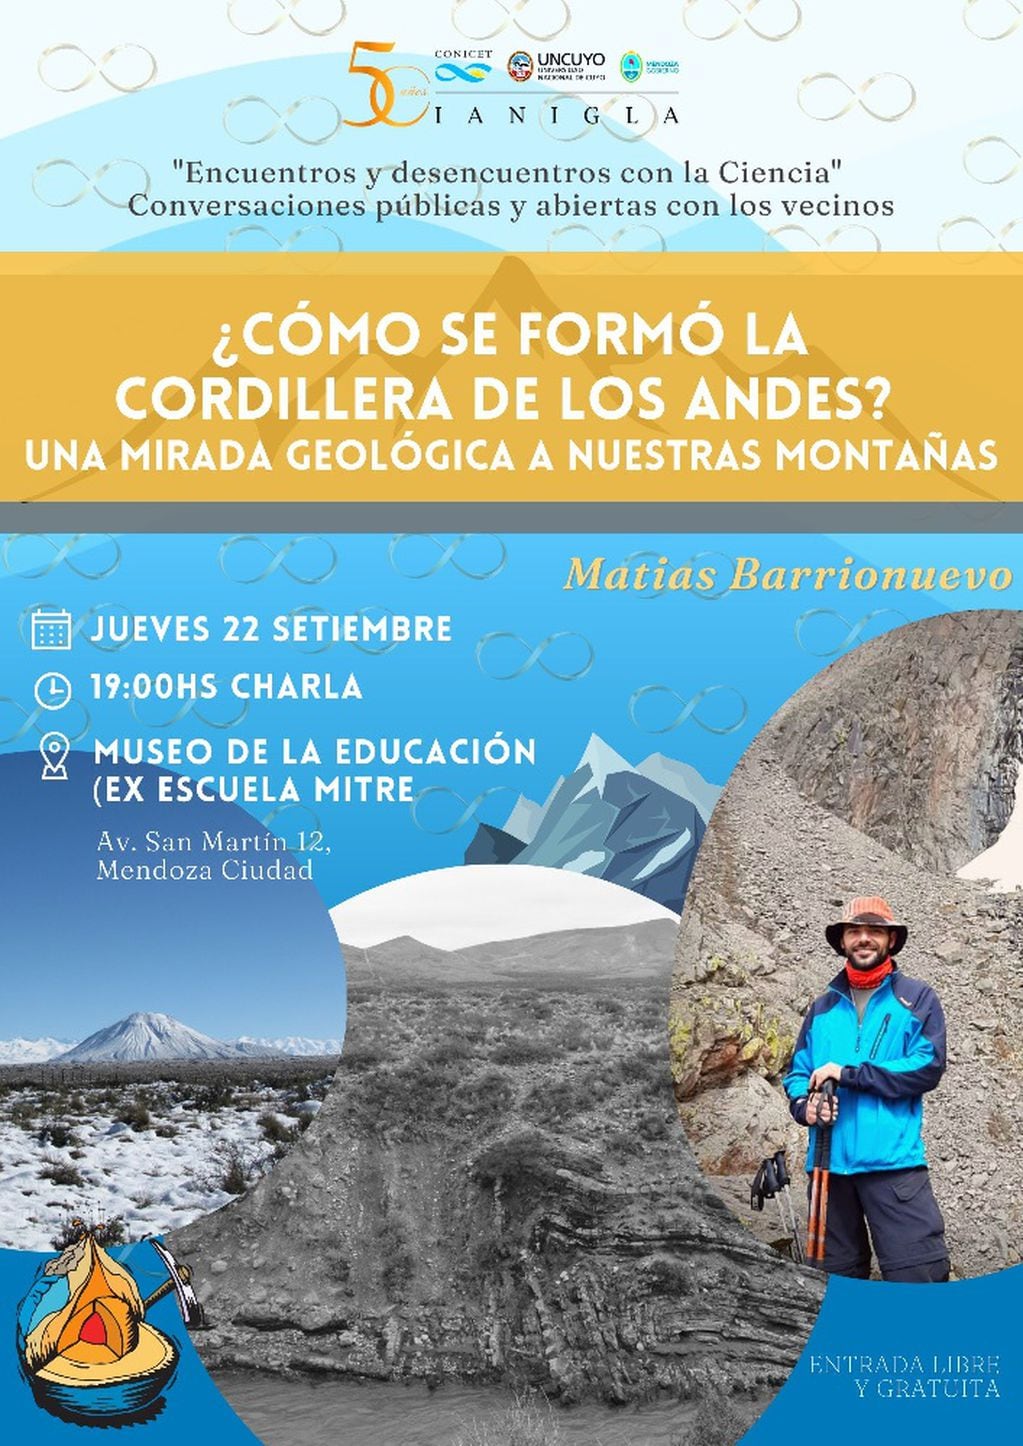 Encuentro y charlas de cómo se formó la Cordillera de Los Andes.